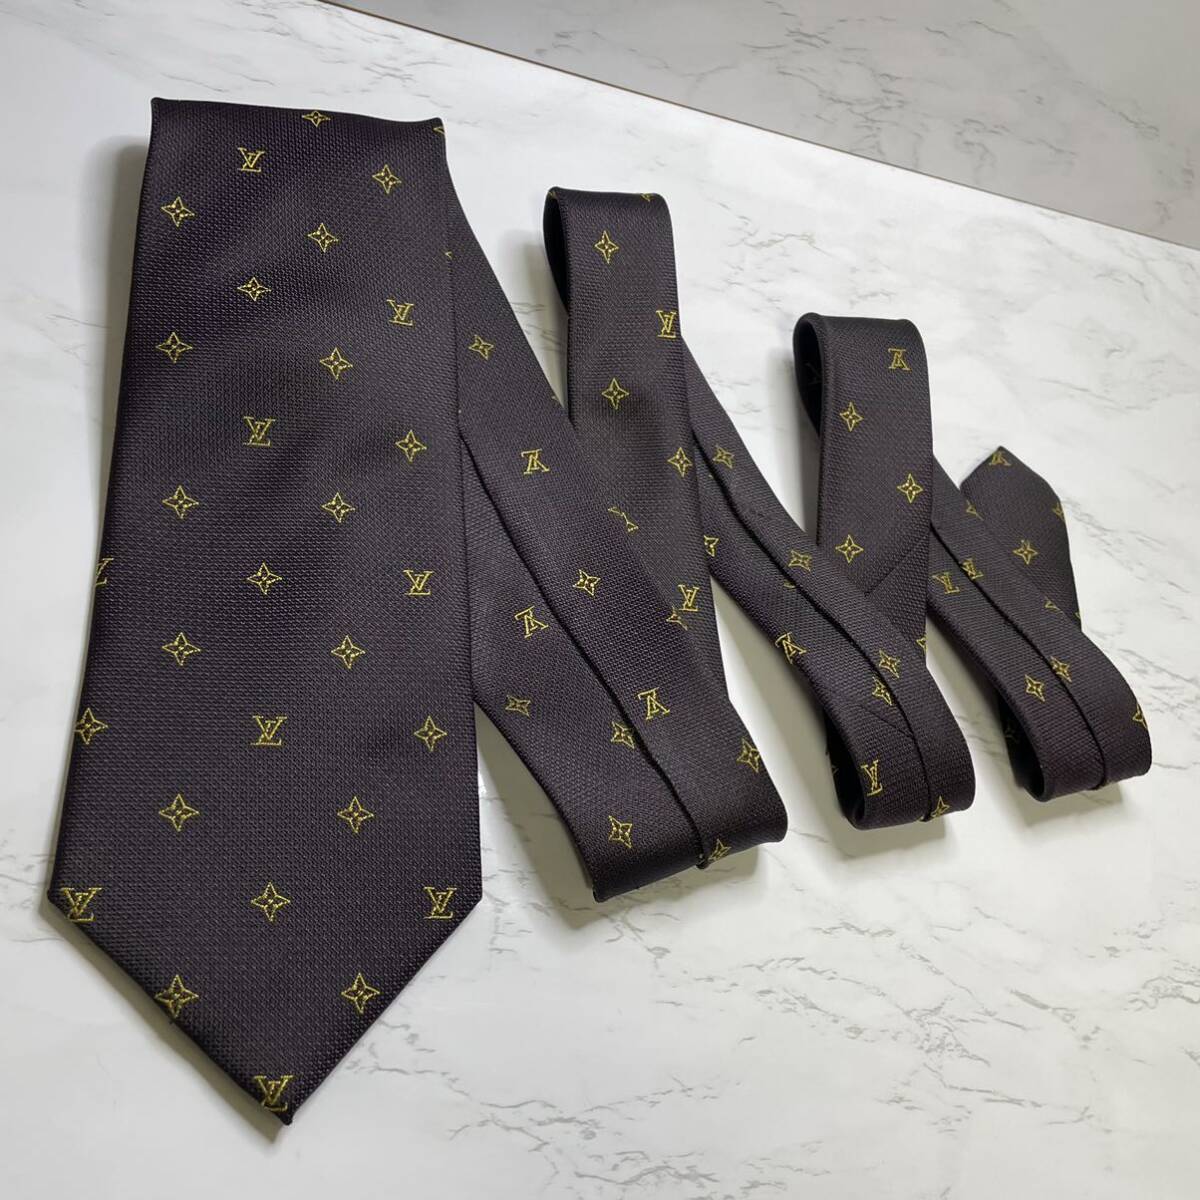  превосходный товар LOUIS VUITTON галстук близко год модели монограмма LVro экстремально lavato бизнес праздничные обряды Smart 